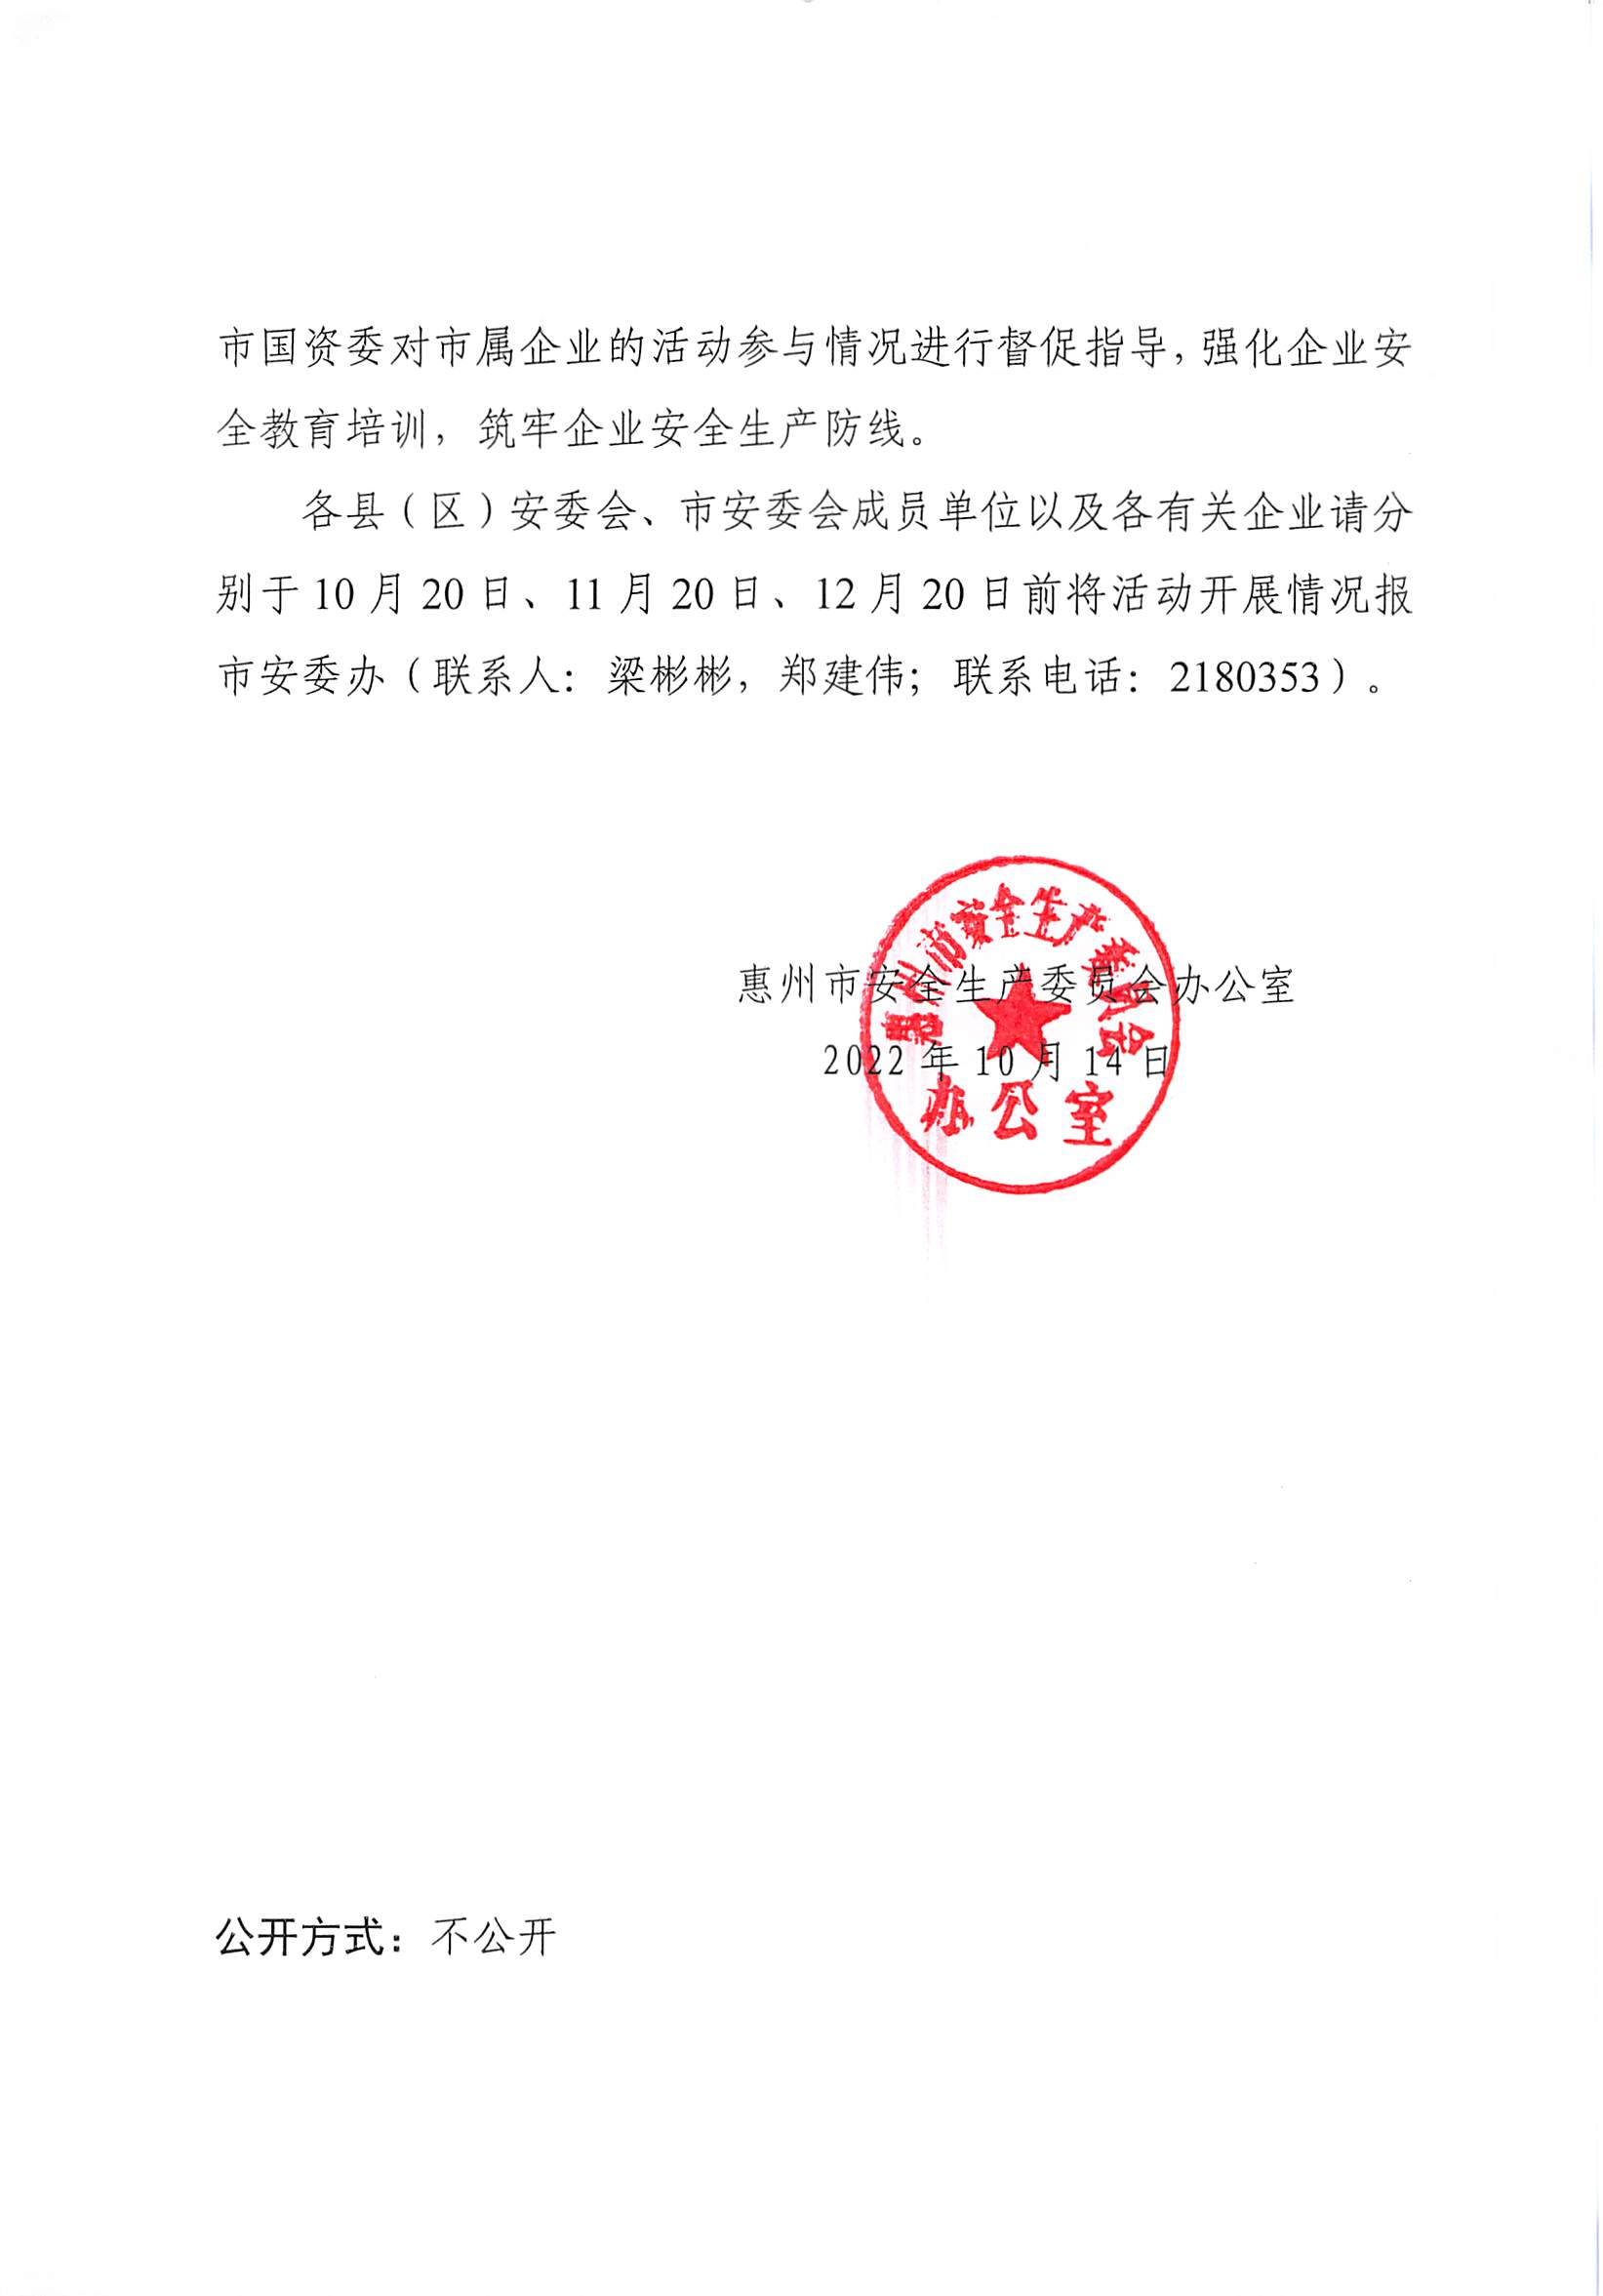 惠州市安全生产委员会办公室转发关于进一步组织开展好广东应急普法“线上马拉松”活动的通知_01.png